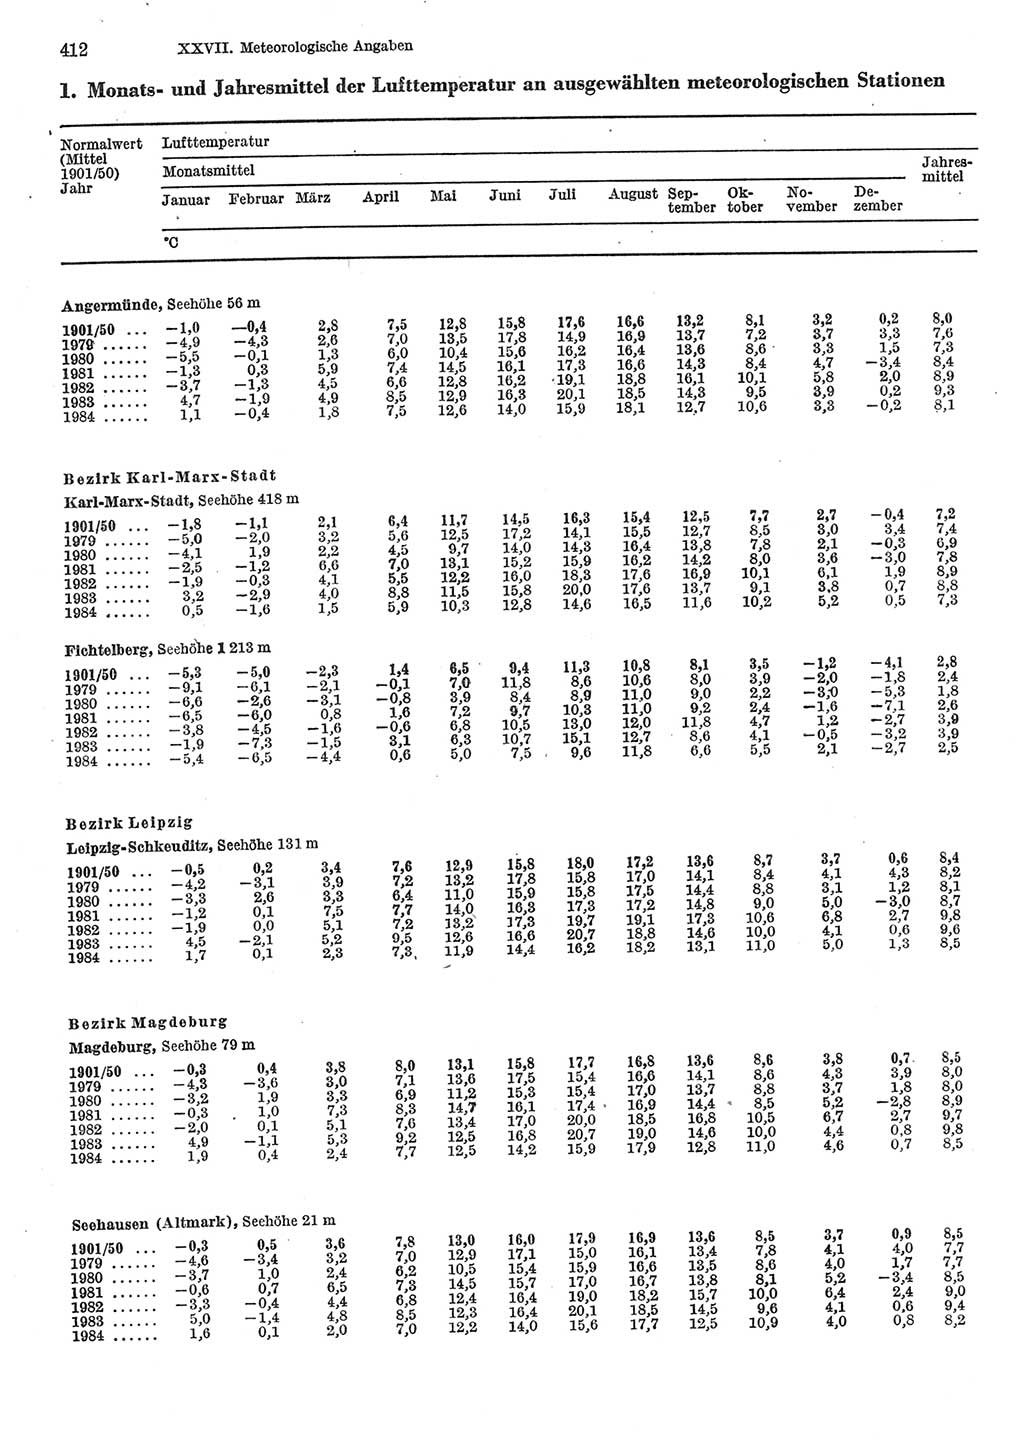 Statistisches Jahrbuch der Deutschen Demokratischen Republik (DDR) 1985, Seite 412 (Stat. Jb. DDR 1985, S. 412)